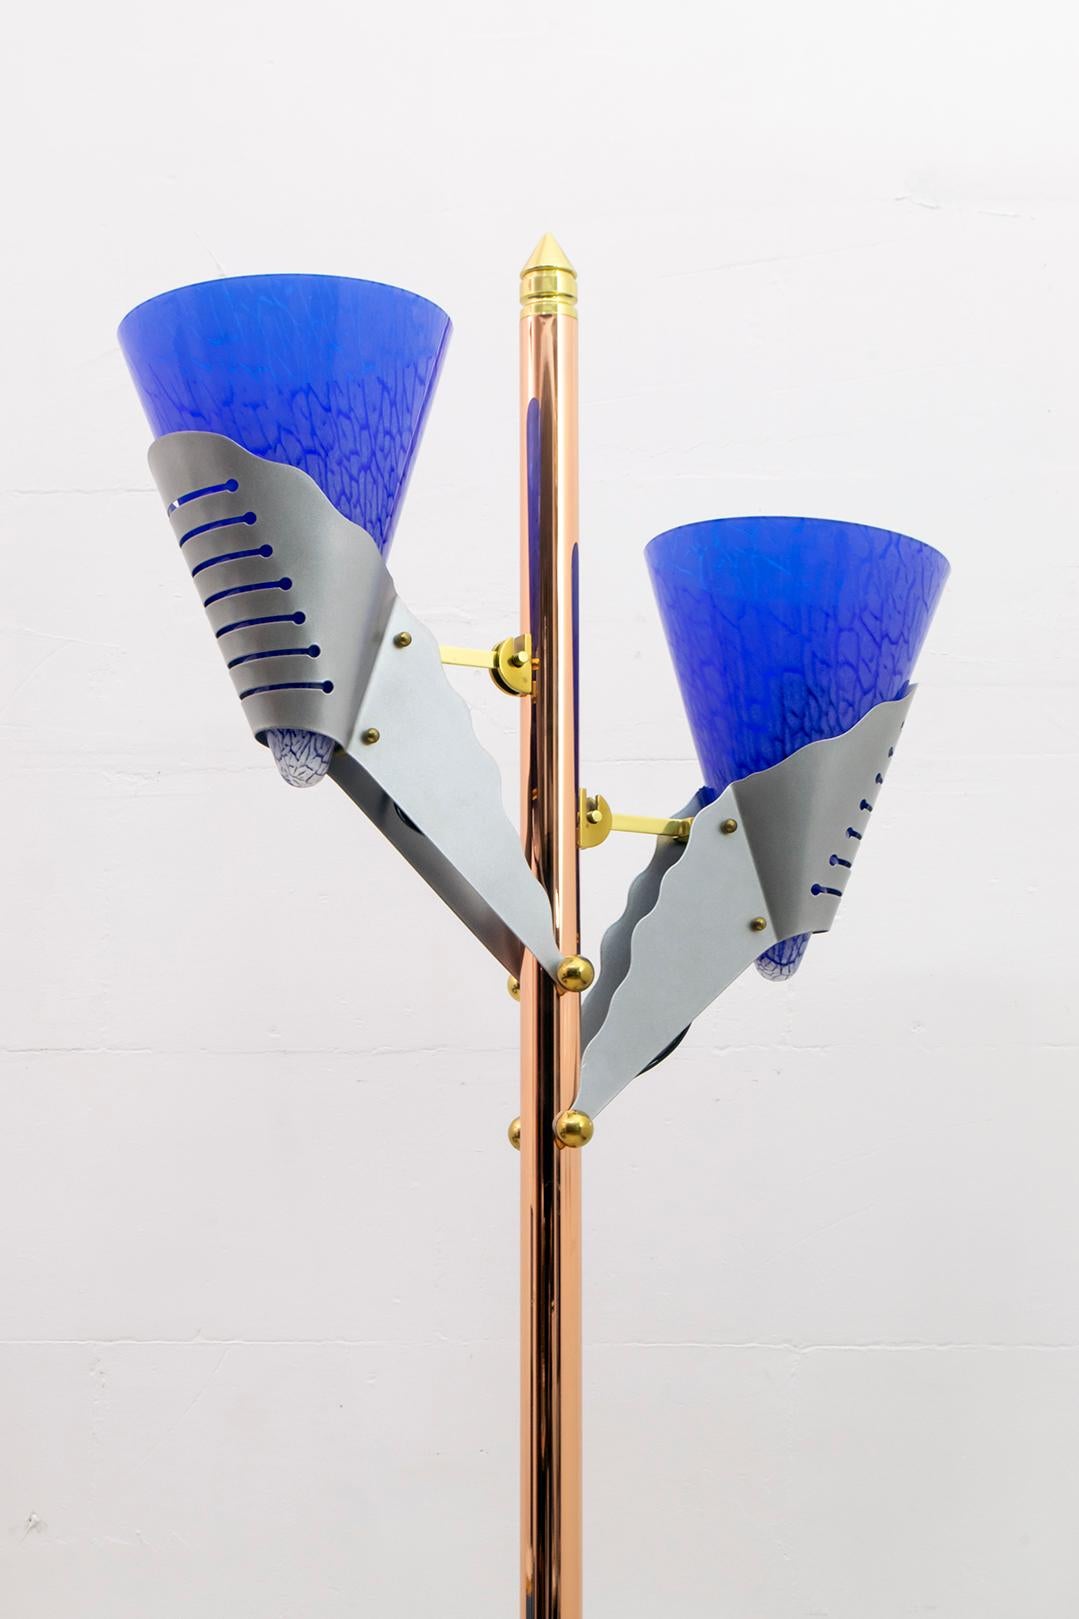 Lampadaire moderniste, créé par la célèbre société milanaise Relco. La lampe est en métal et cuivre, les deux cônes en verre soufflé de Murano, les finitions en laiton. Un variateur règle l'intensité de la lumière, marqué par Relco Milano.